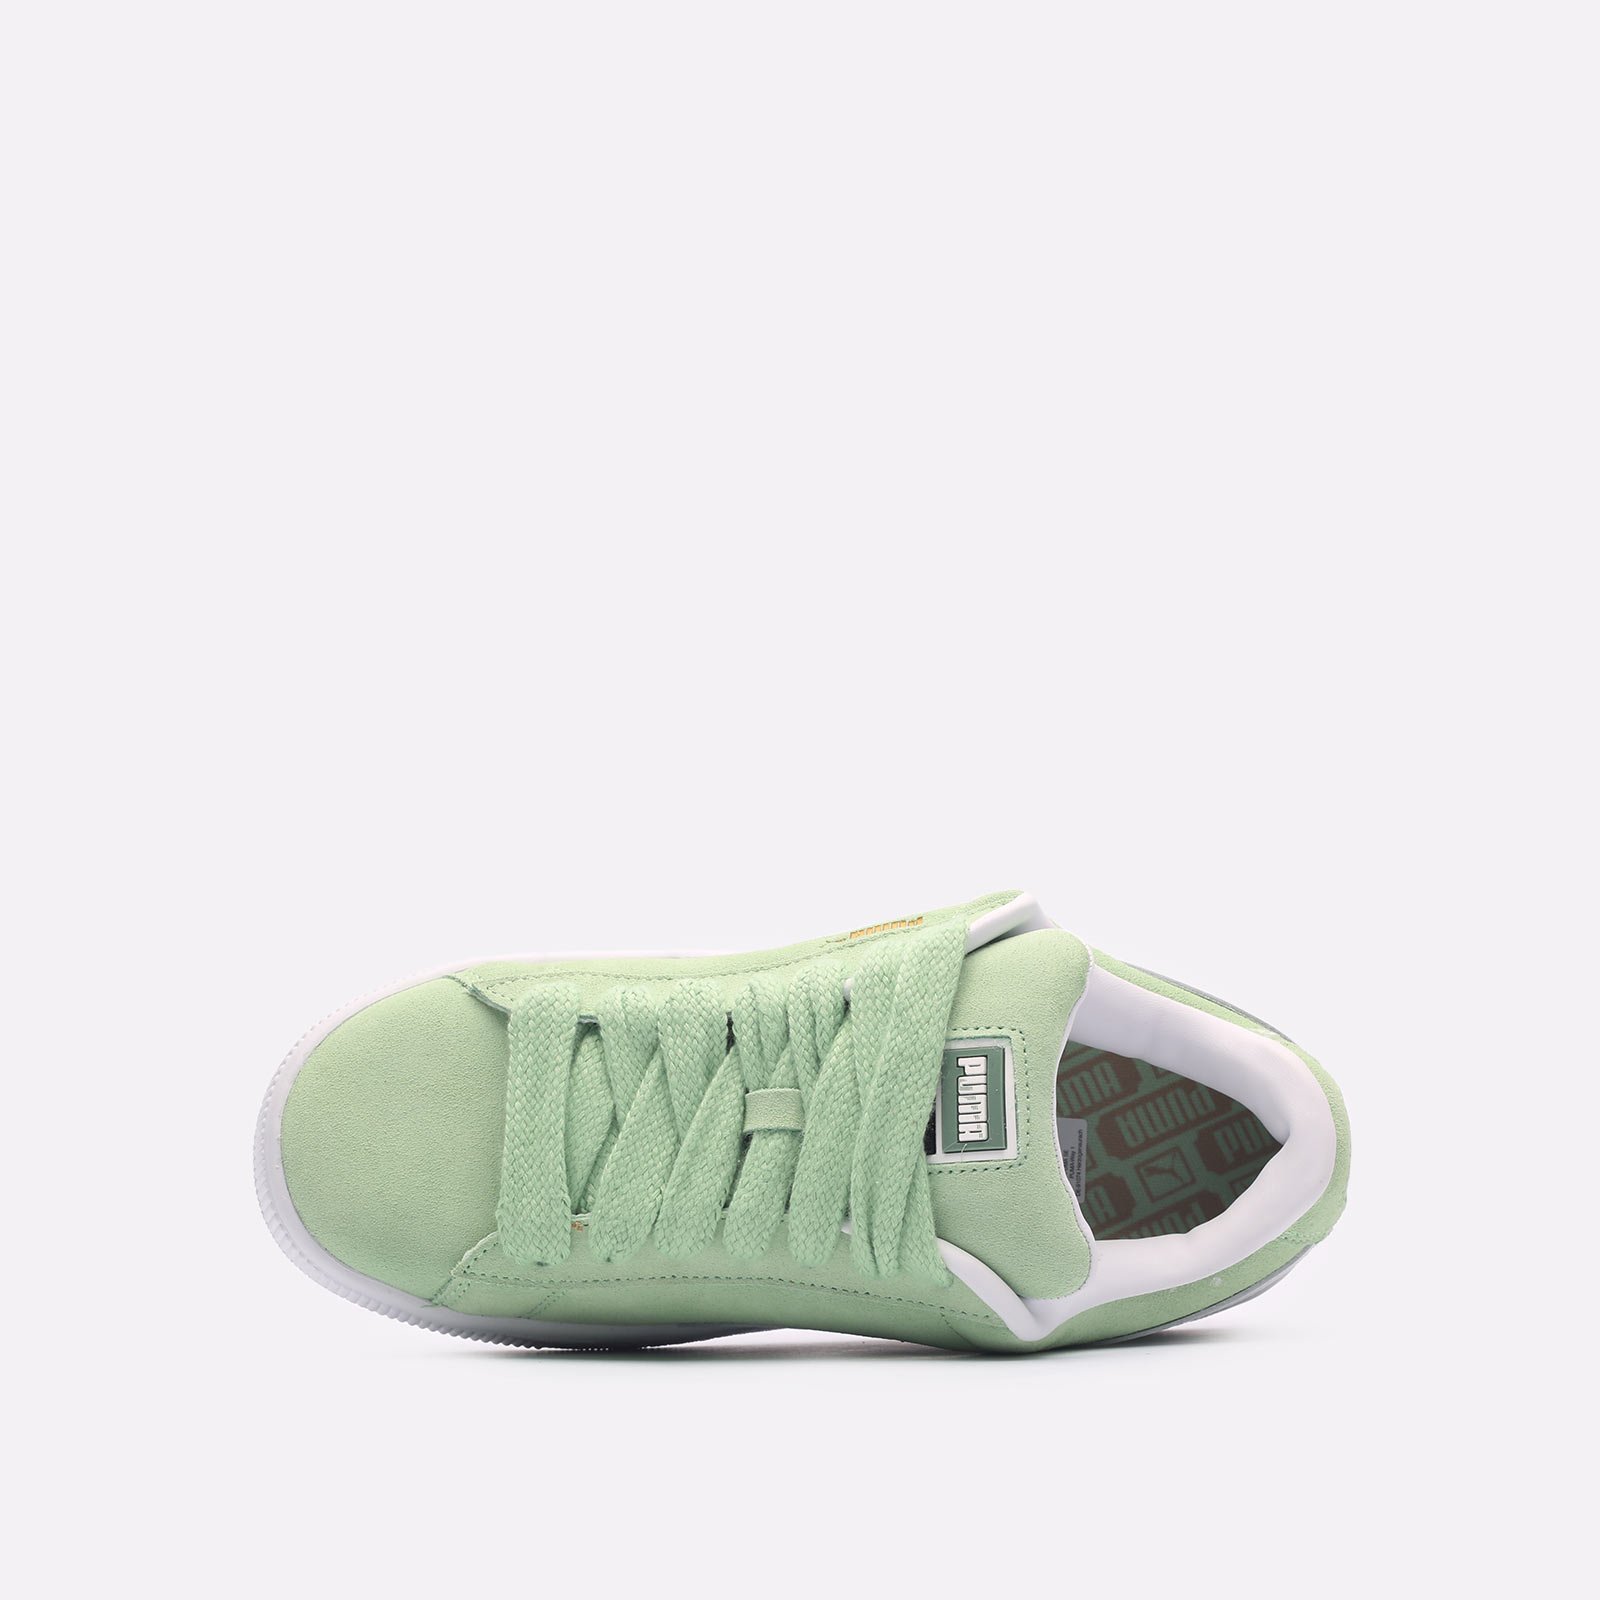 мужские зеленые кроссовки PUMA Suede XL 39520507 - цена, описание, фото 6